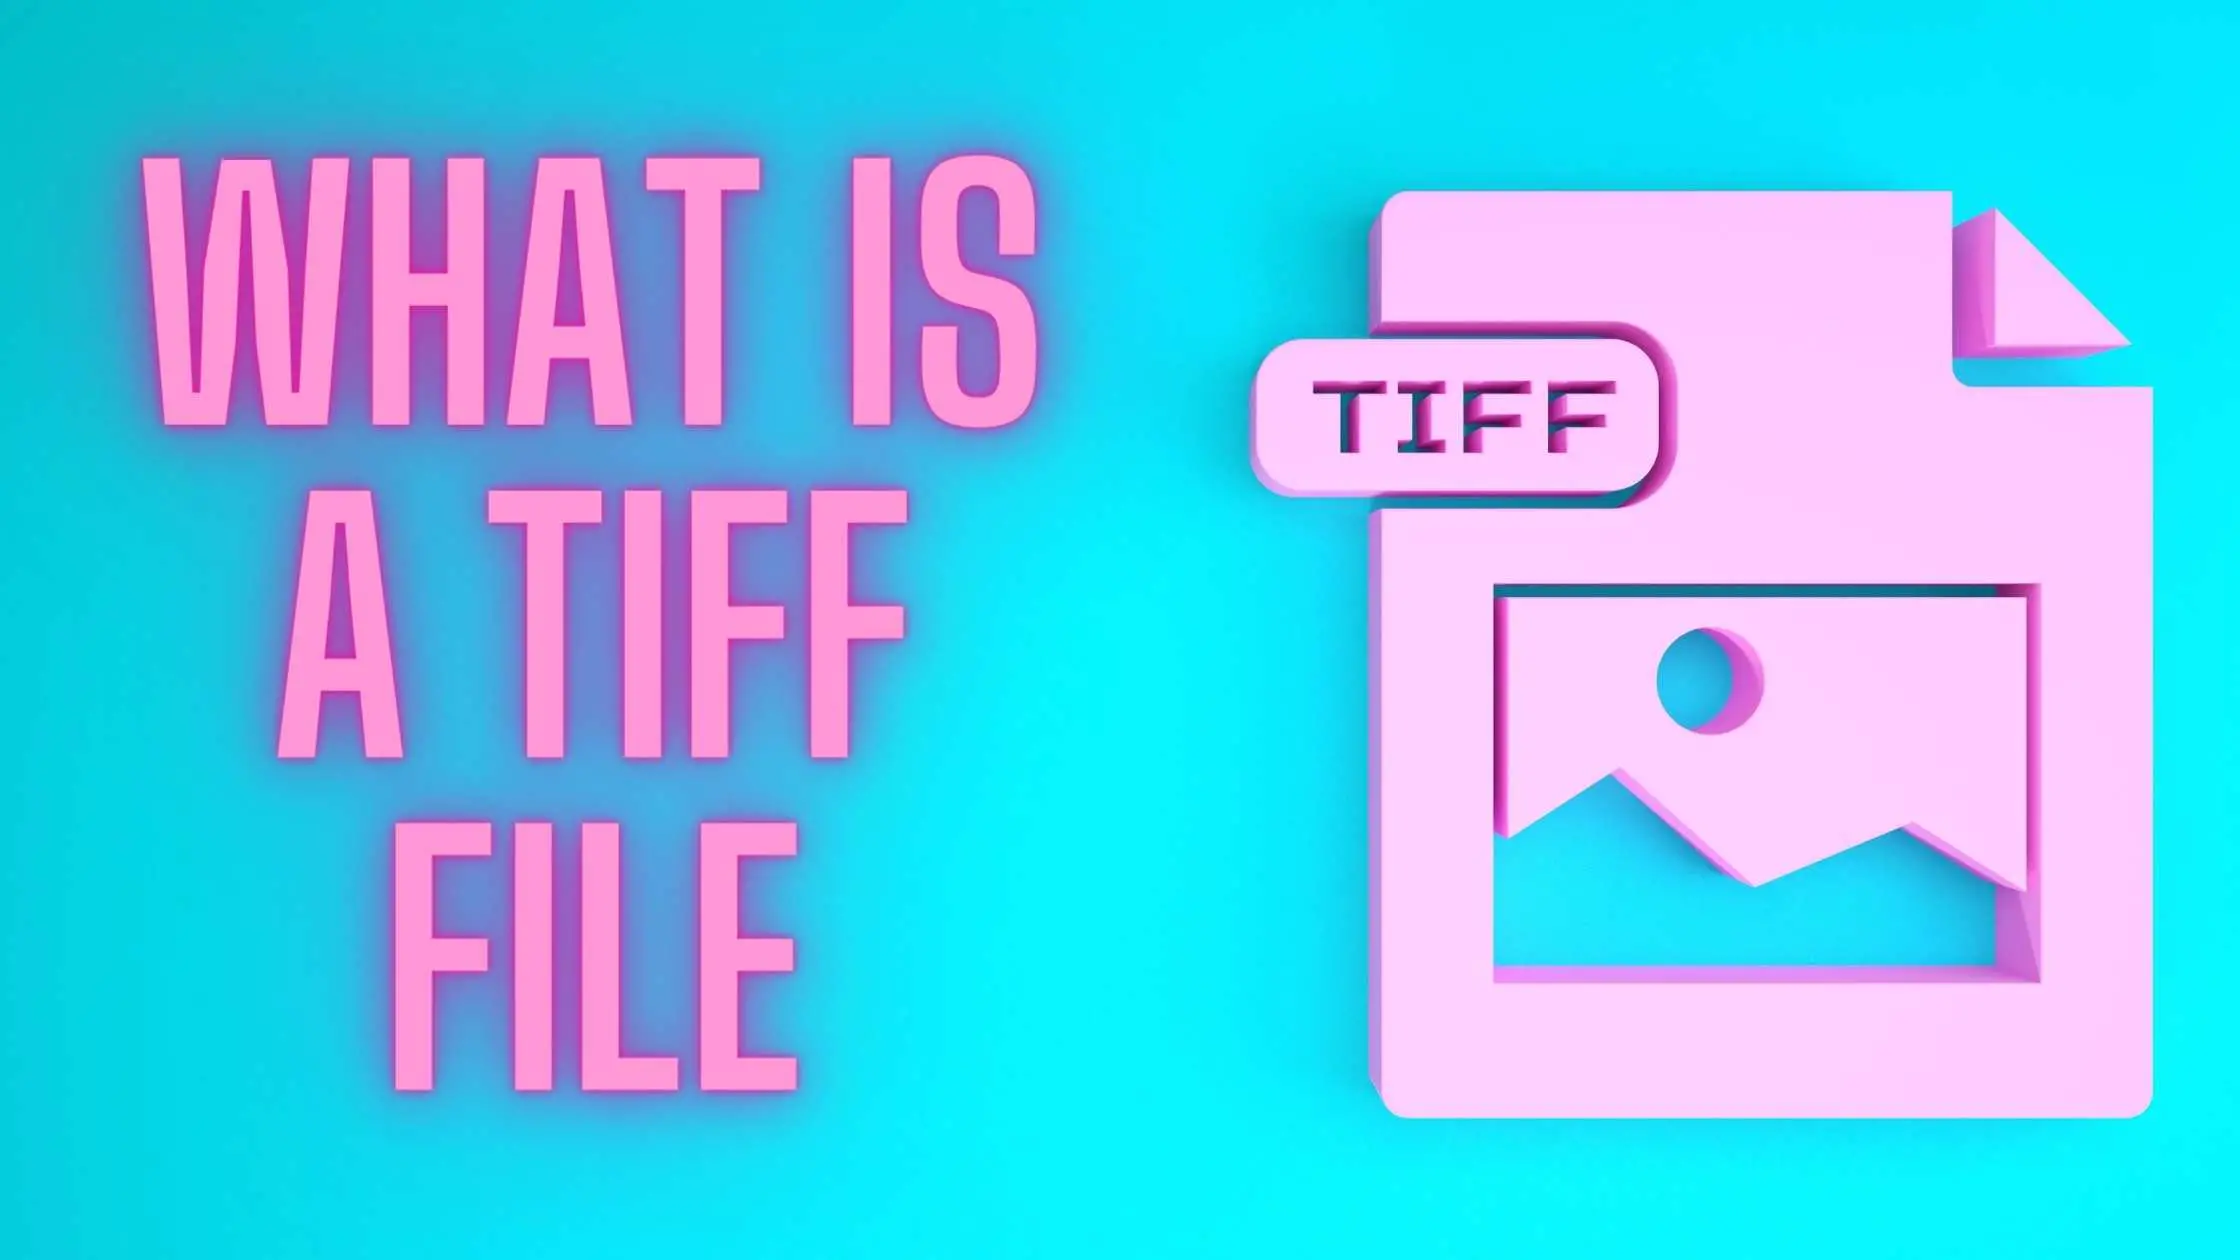 TIFF картинки. Фотографии TIFF. Сжать файл TIFF. Как снизить вес тифф файла.